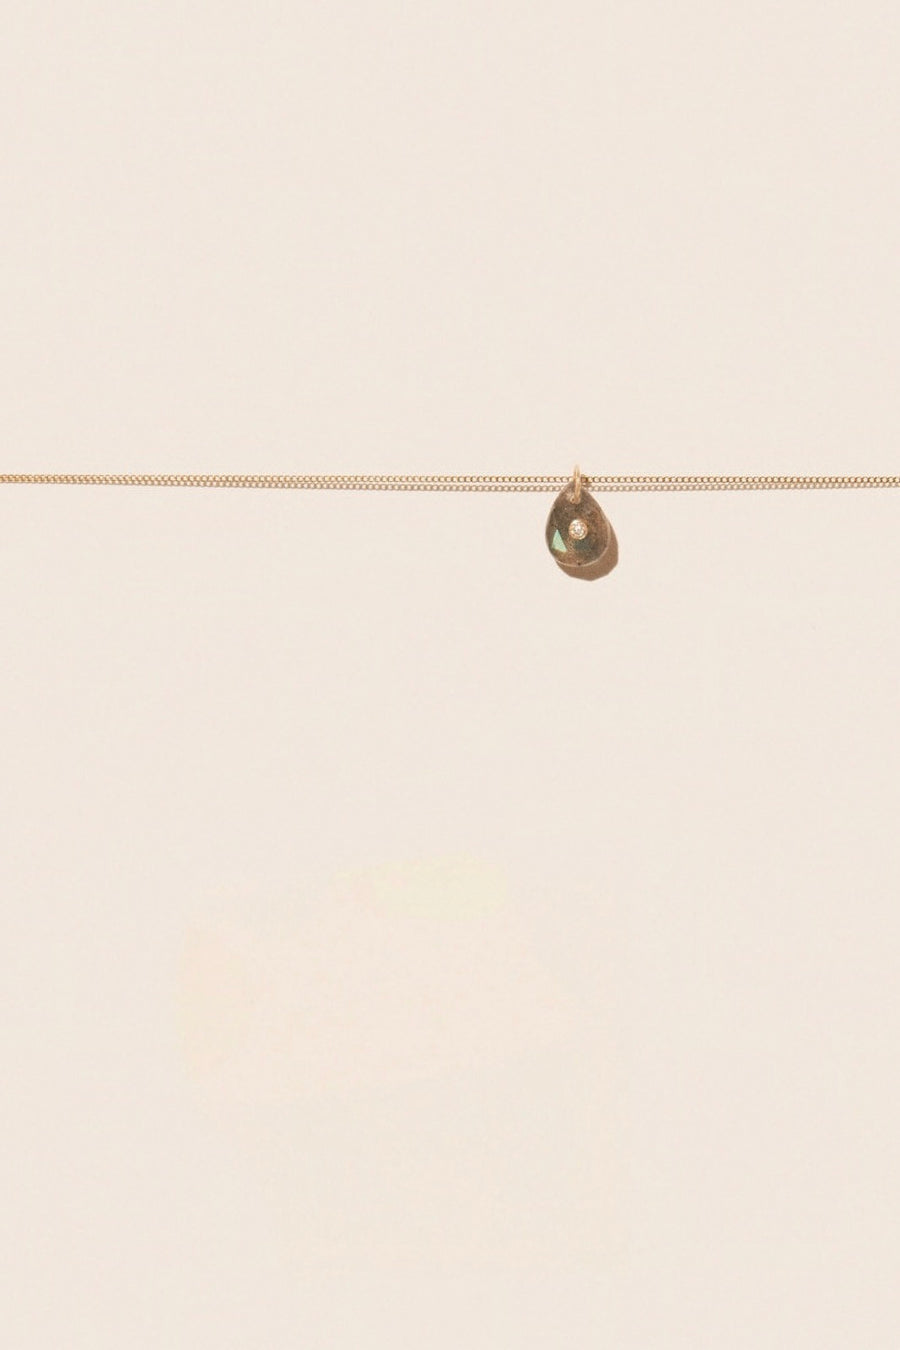 Orso Choker Necklace - Labradorite